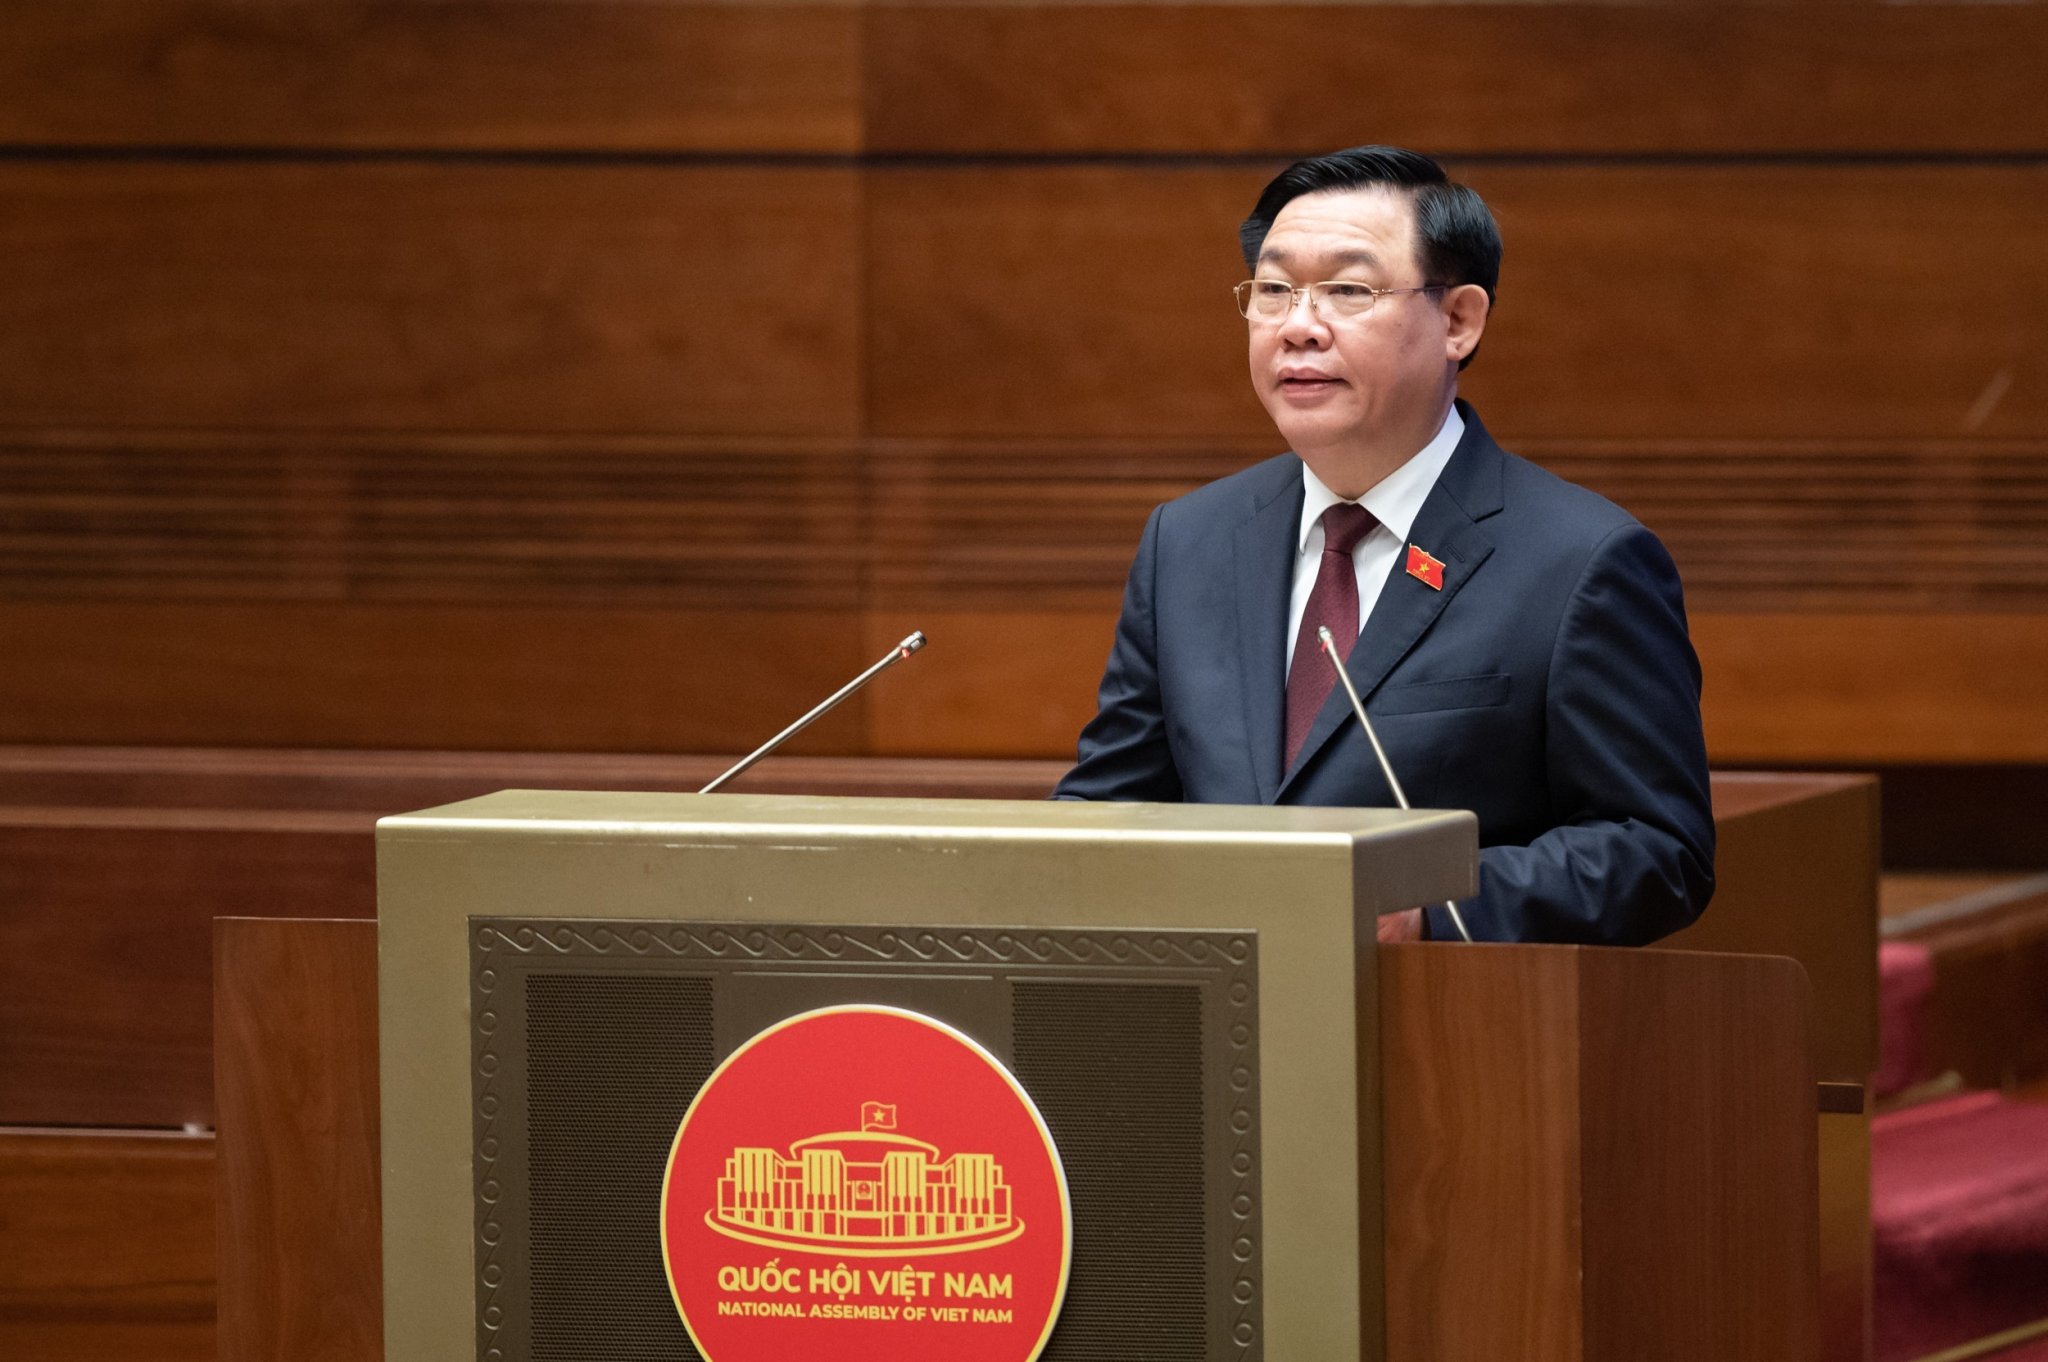 Bộ trưởng Đào Ngọc Dung trả lời đúng trọng tâm, giải trình đầy đủ, thỏa đáng các vấn đề mà đại biểu Quốc hội nêu